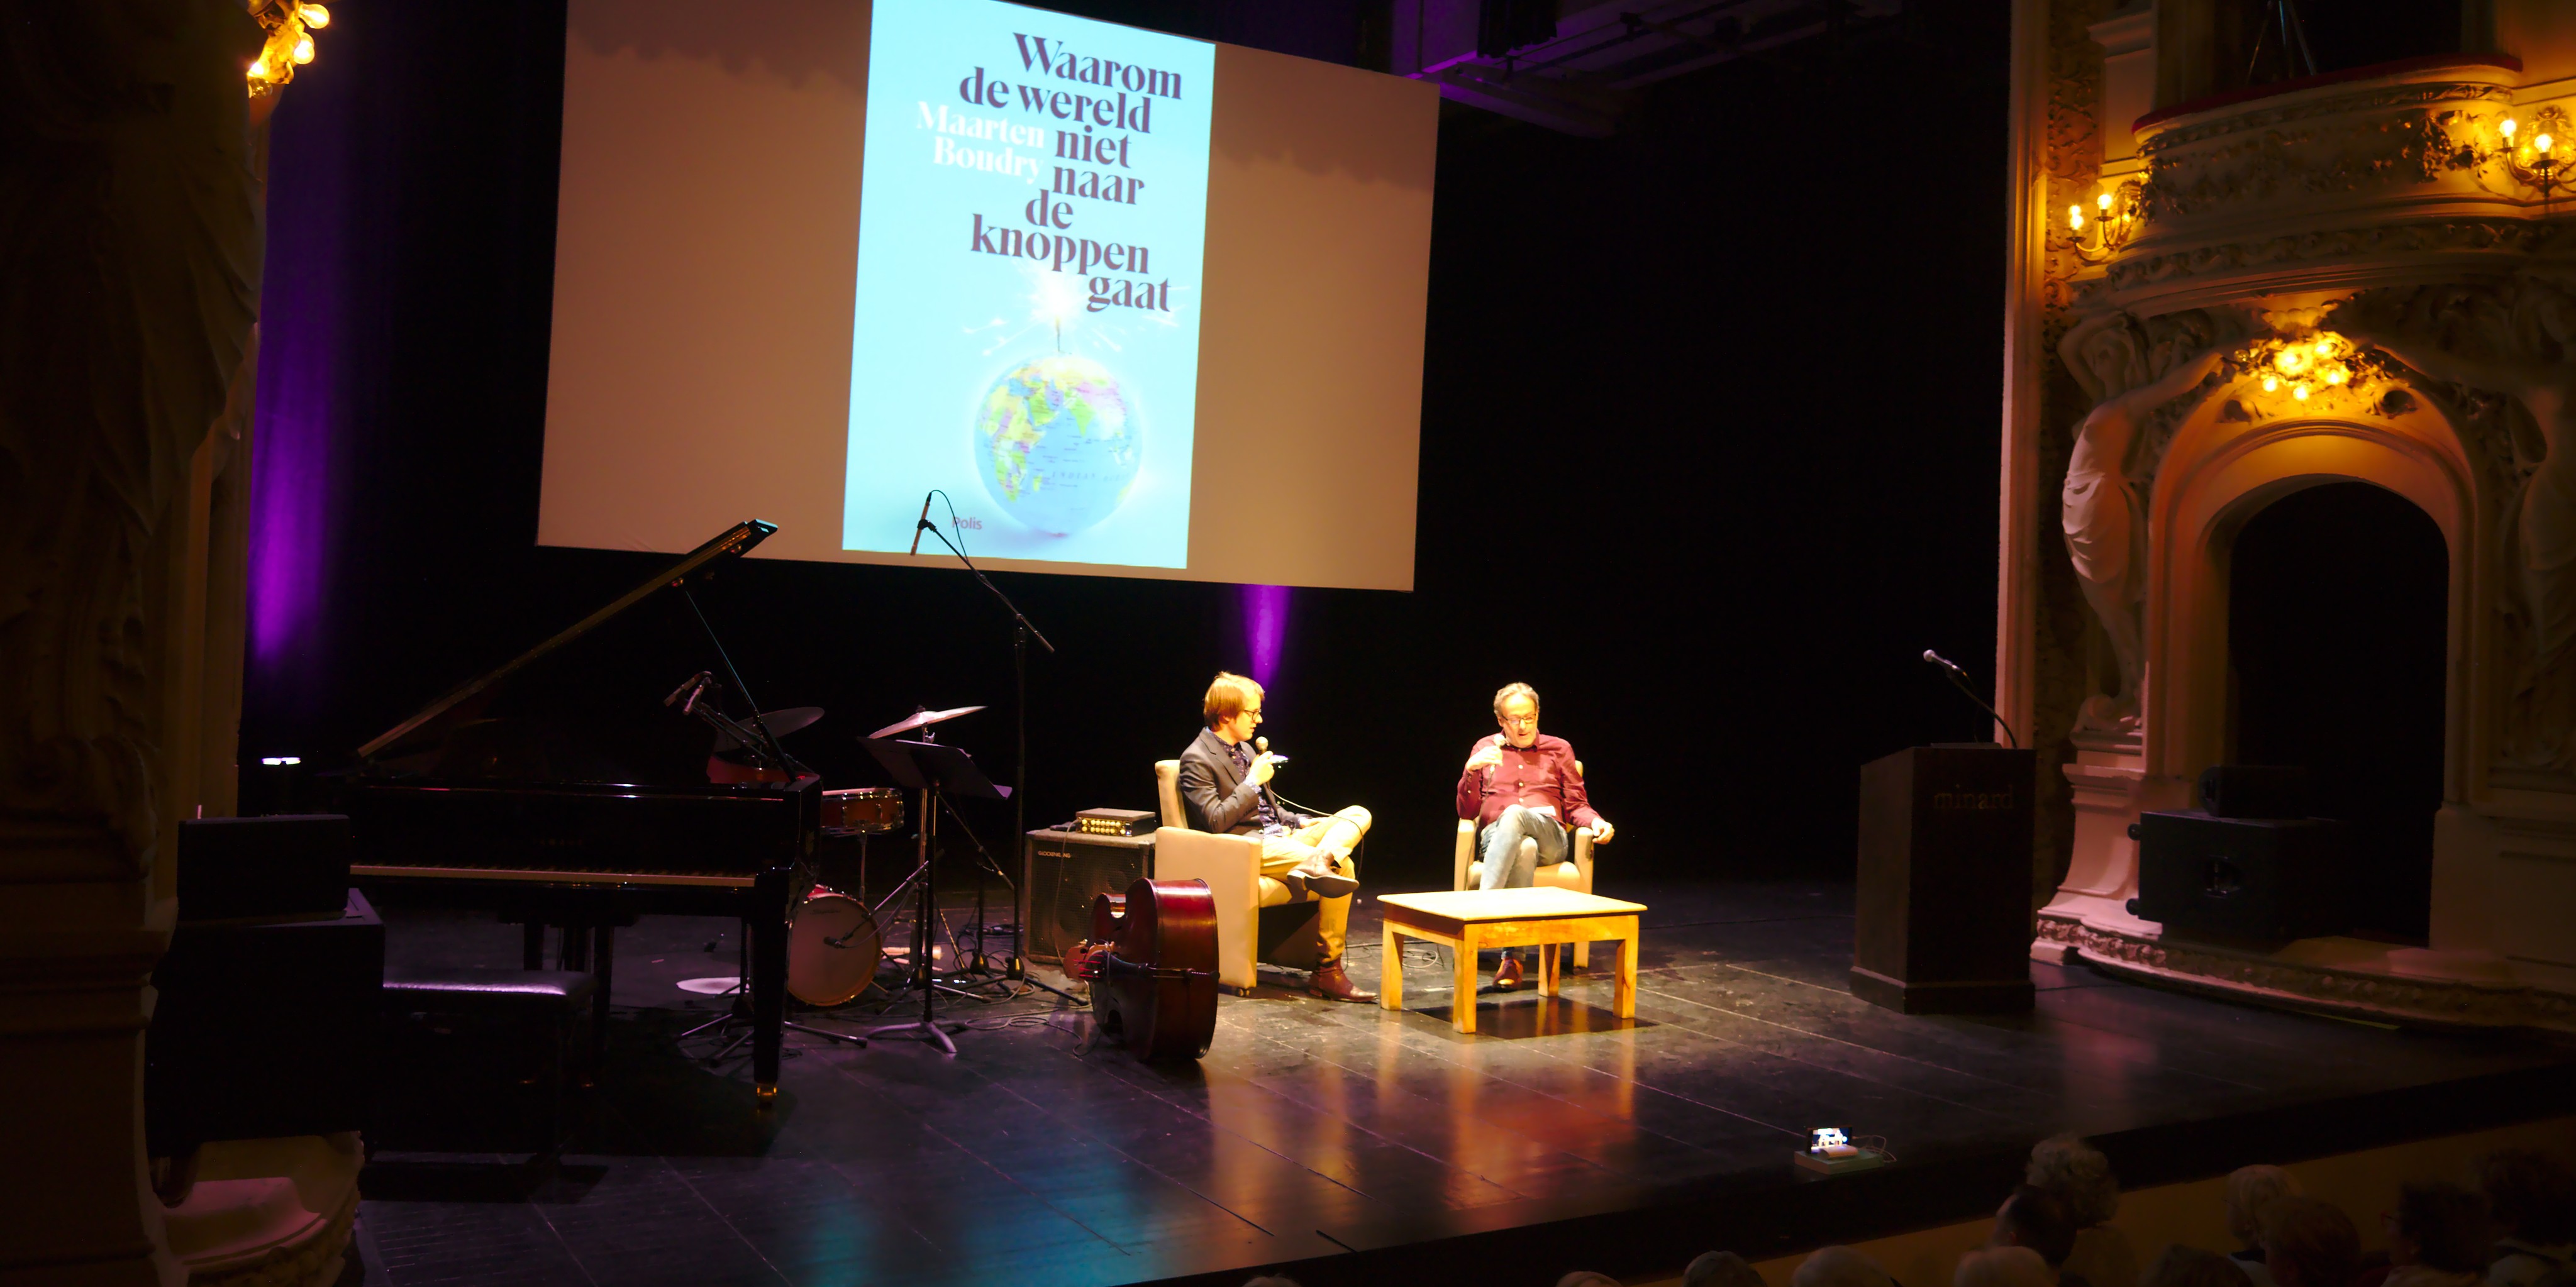 Maarten Boudry wordt geïnterviewd door Marnix Verplancke in de Minrard bij zijn boekvoorstelling "Waarom de wereld niet naar de knoppen gaat" (Foto: Jozef Van Giel)